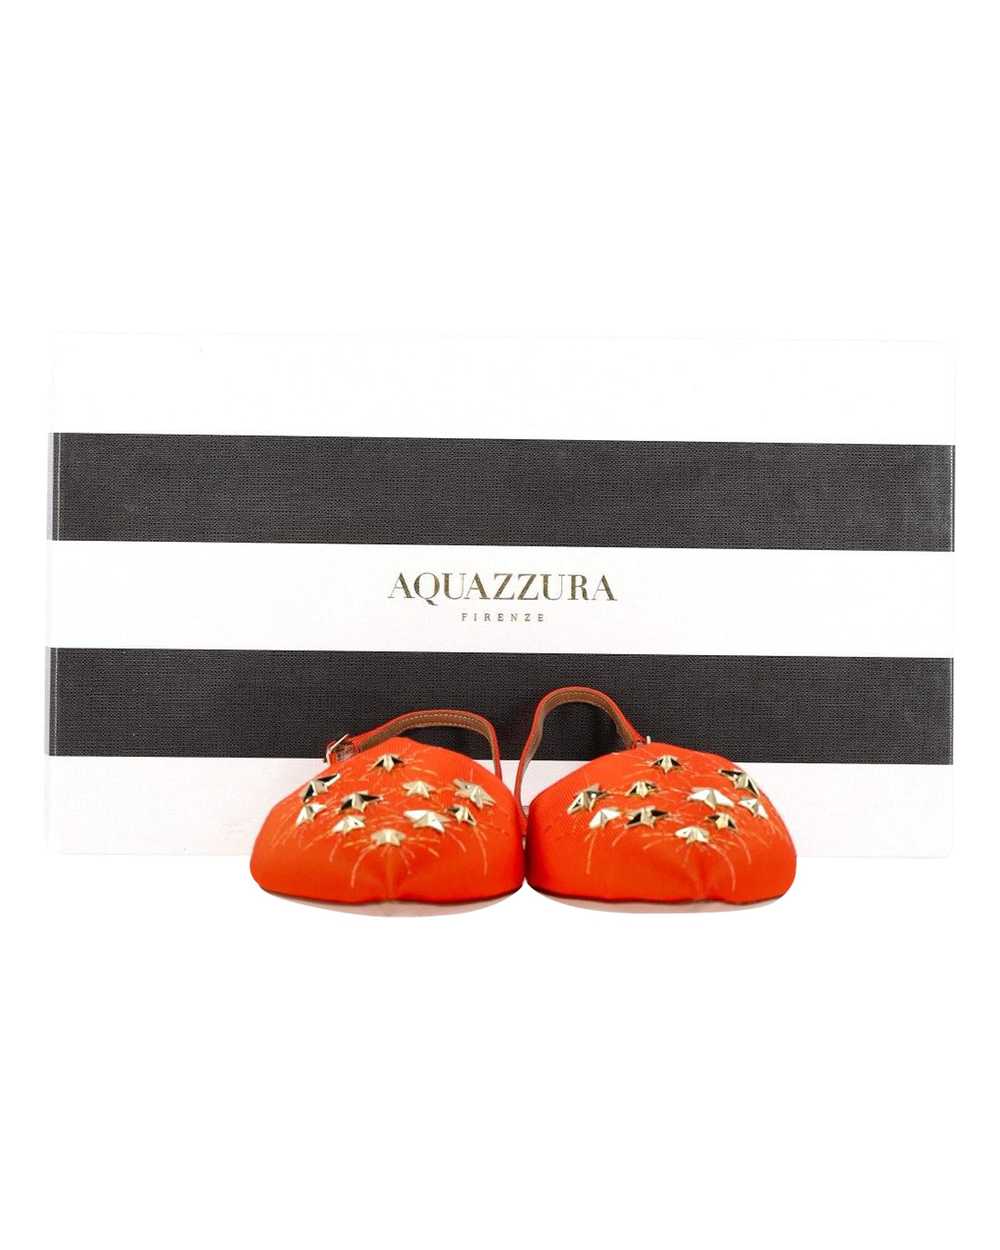 Product Details Aquazzura Orange Studded Accents … - image 3